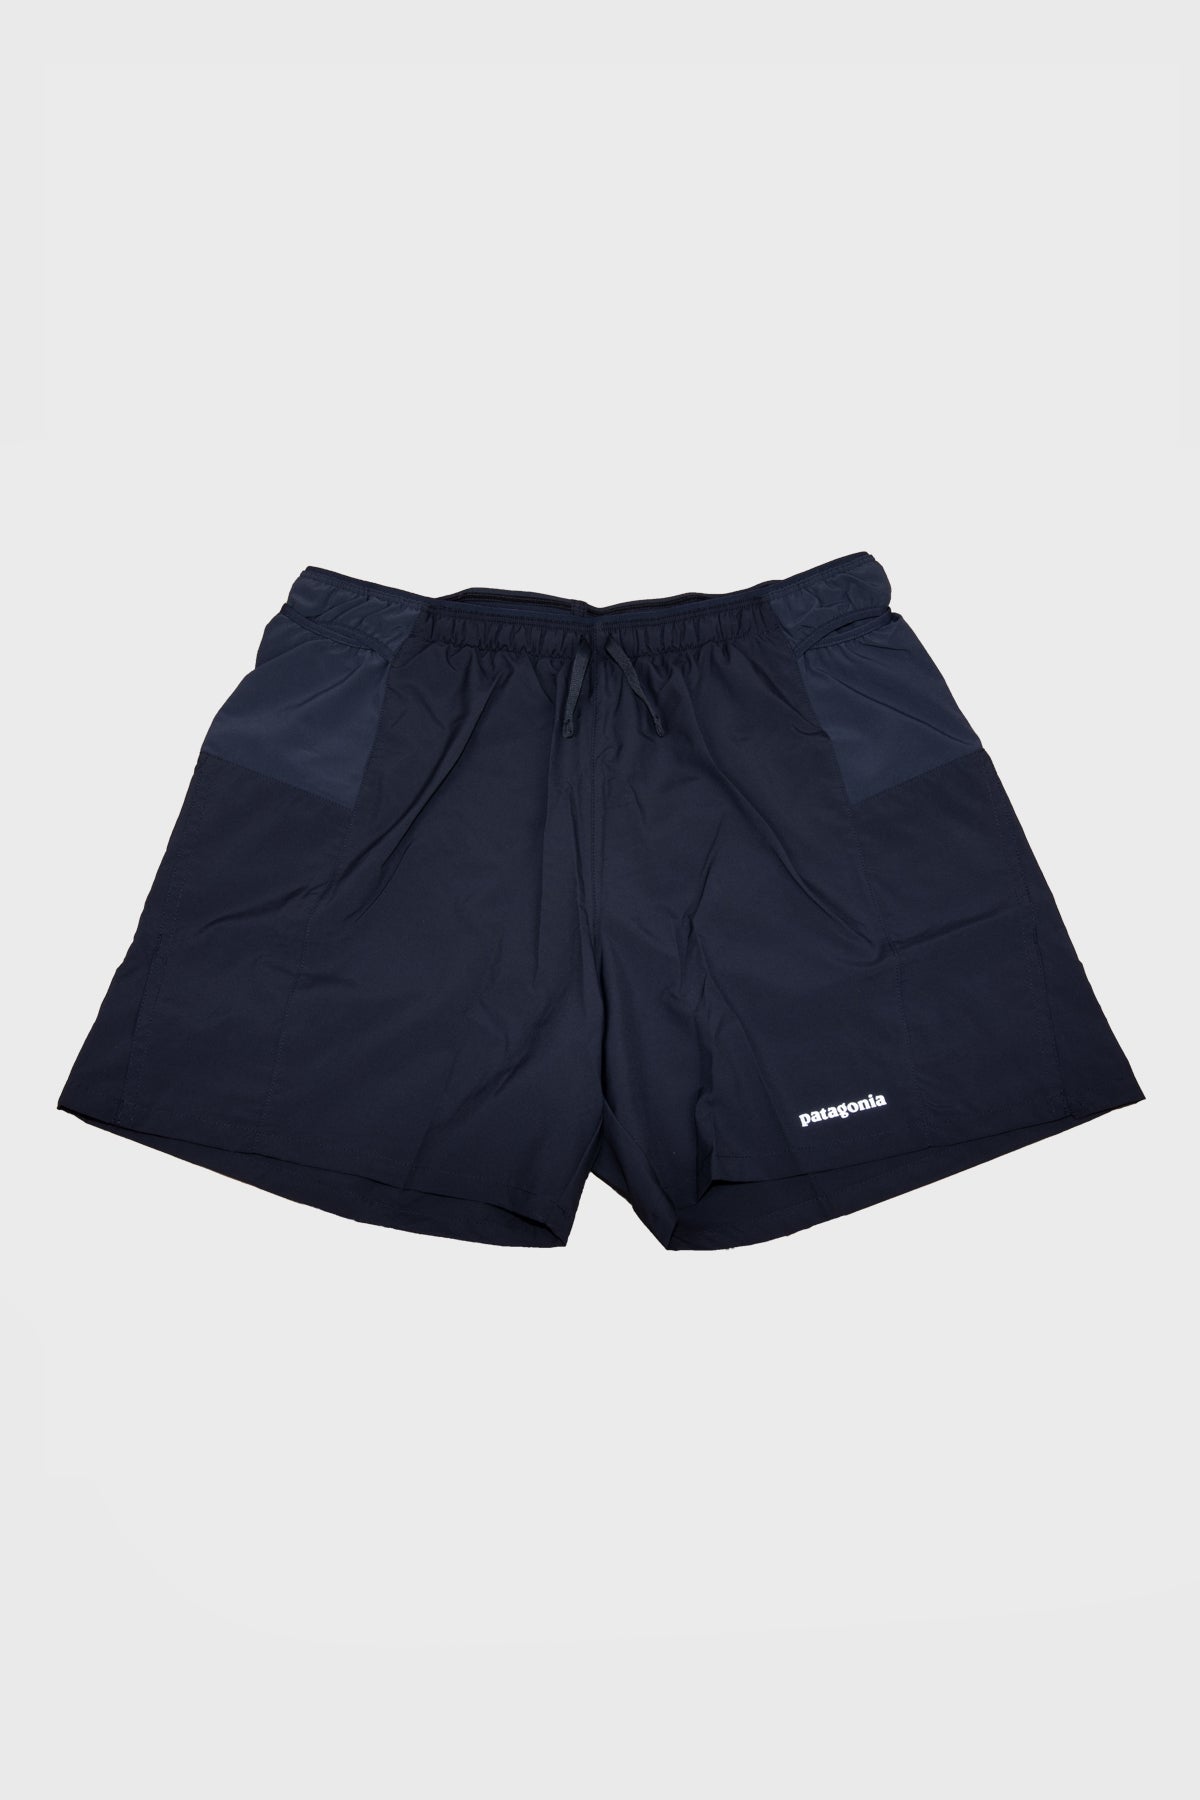 patagonia - strider pro shorts 7"